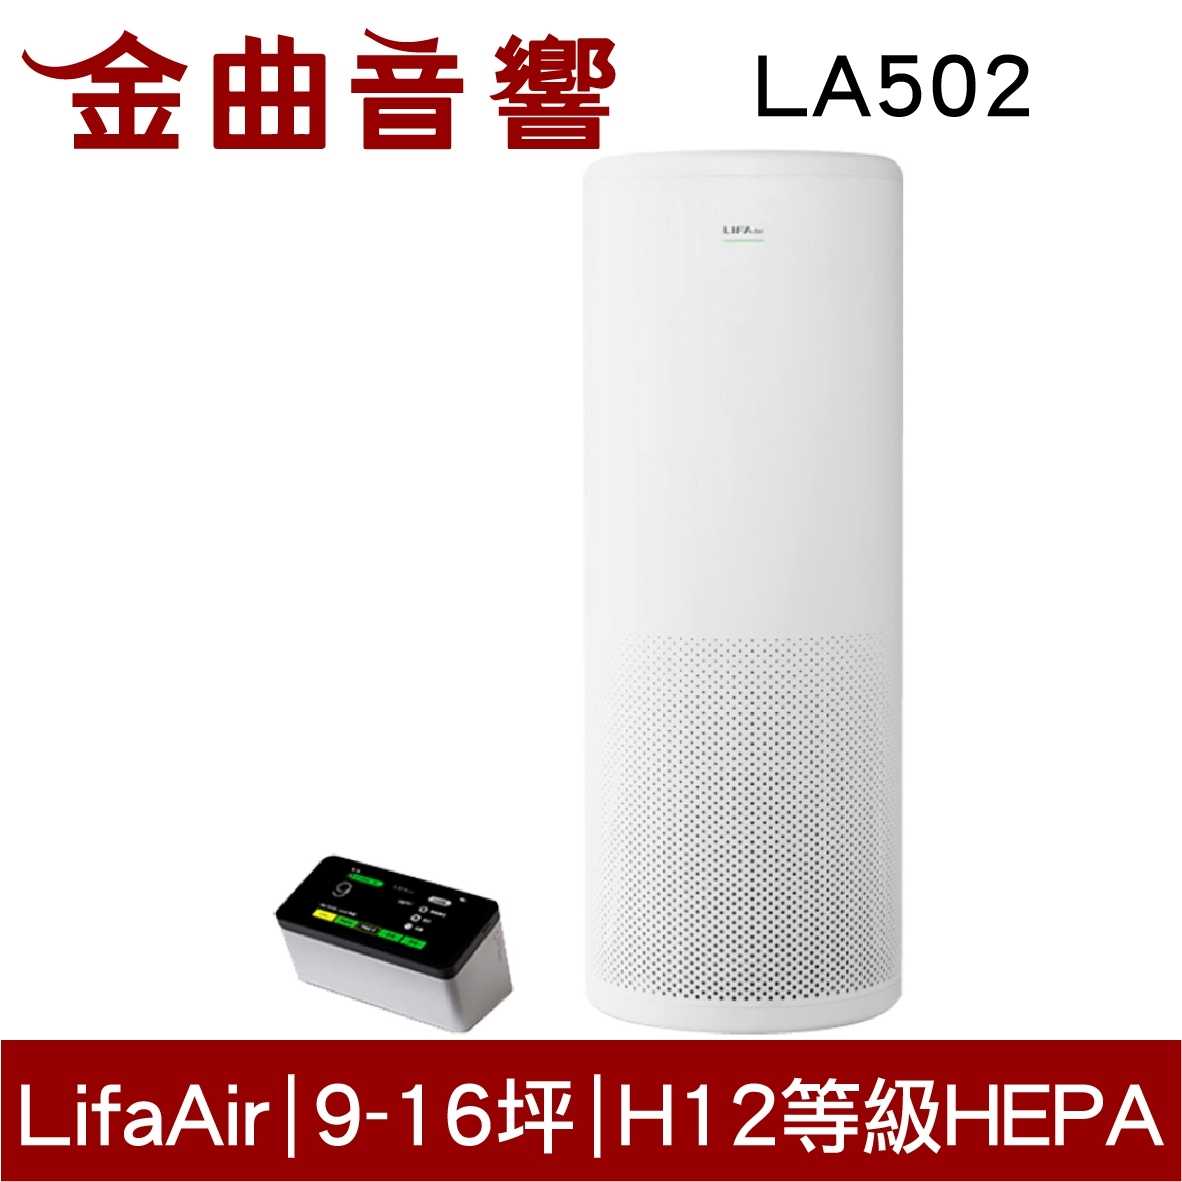 Lifa Air LA502 家用空氣清淨機 LIFAair | 金曲音響